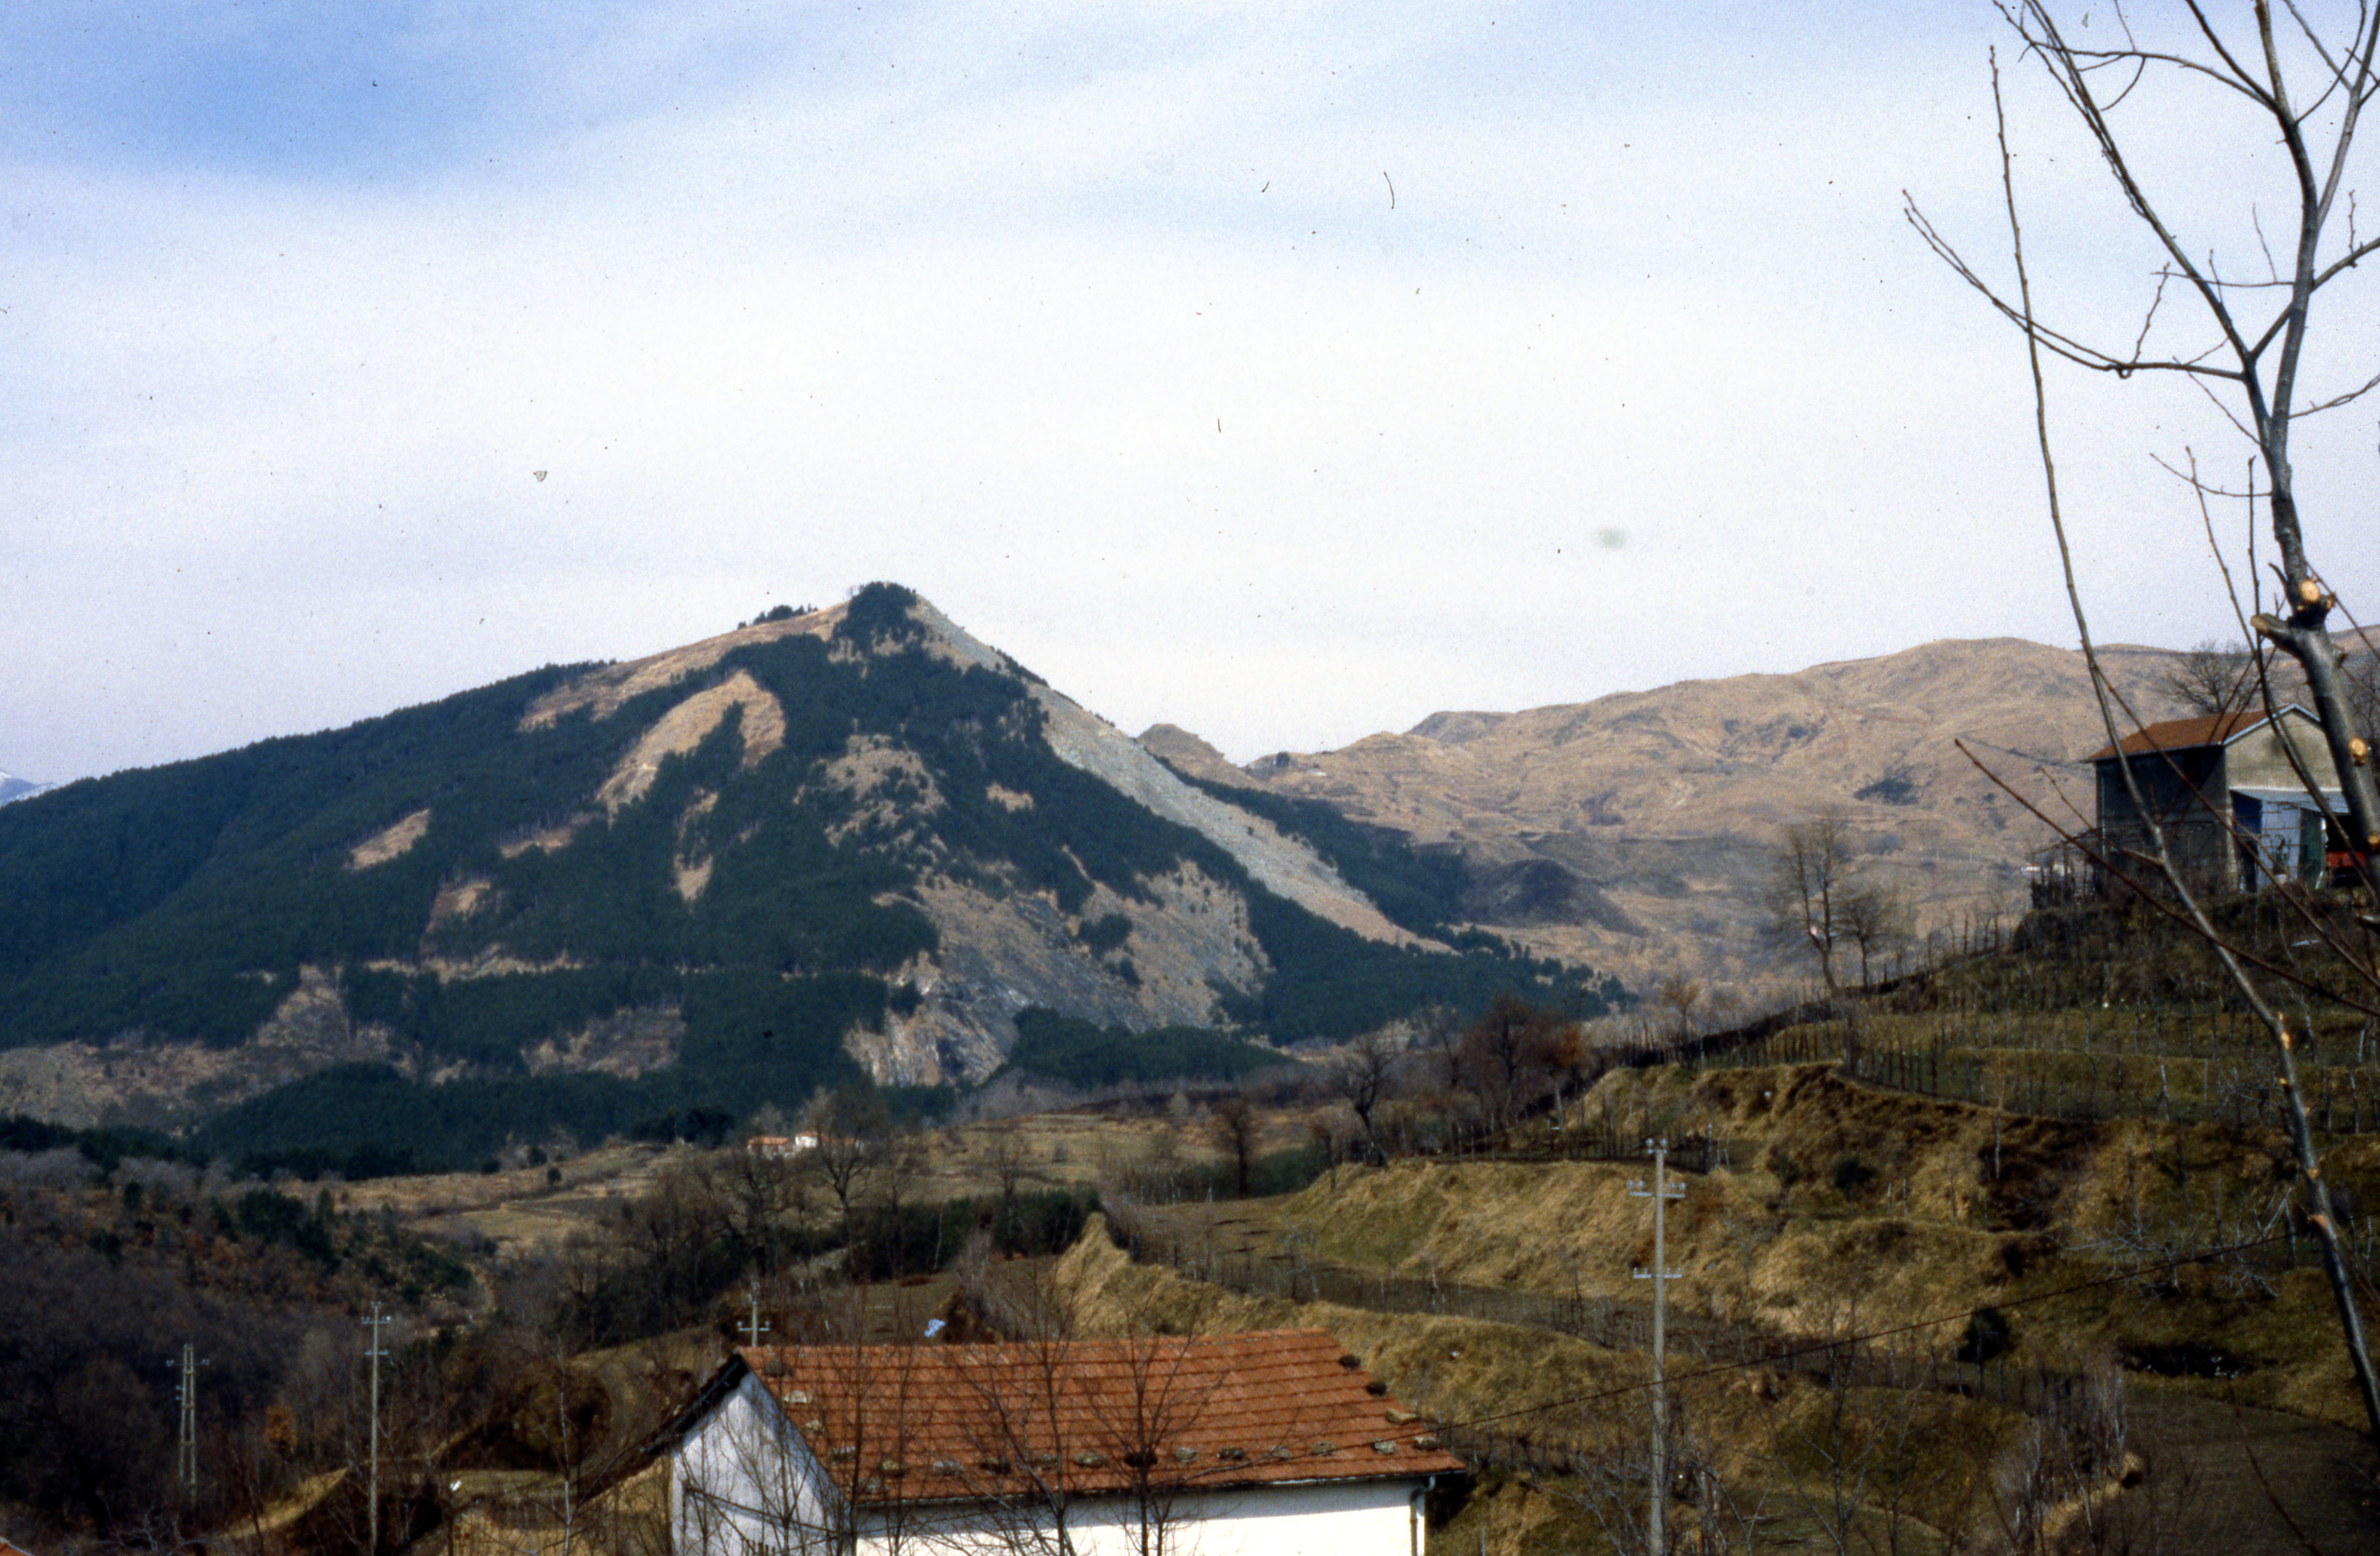 Insediamento preromano di Monte Dragnone (insediamento) - Zignago (SP)  (PERIODIZZAZIONI/ Protostoria/ Eta' del Ferro/ Seconda eta' del Ferro)